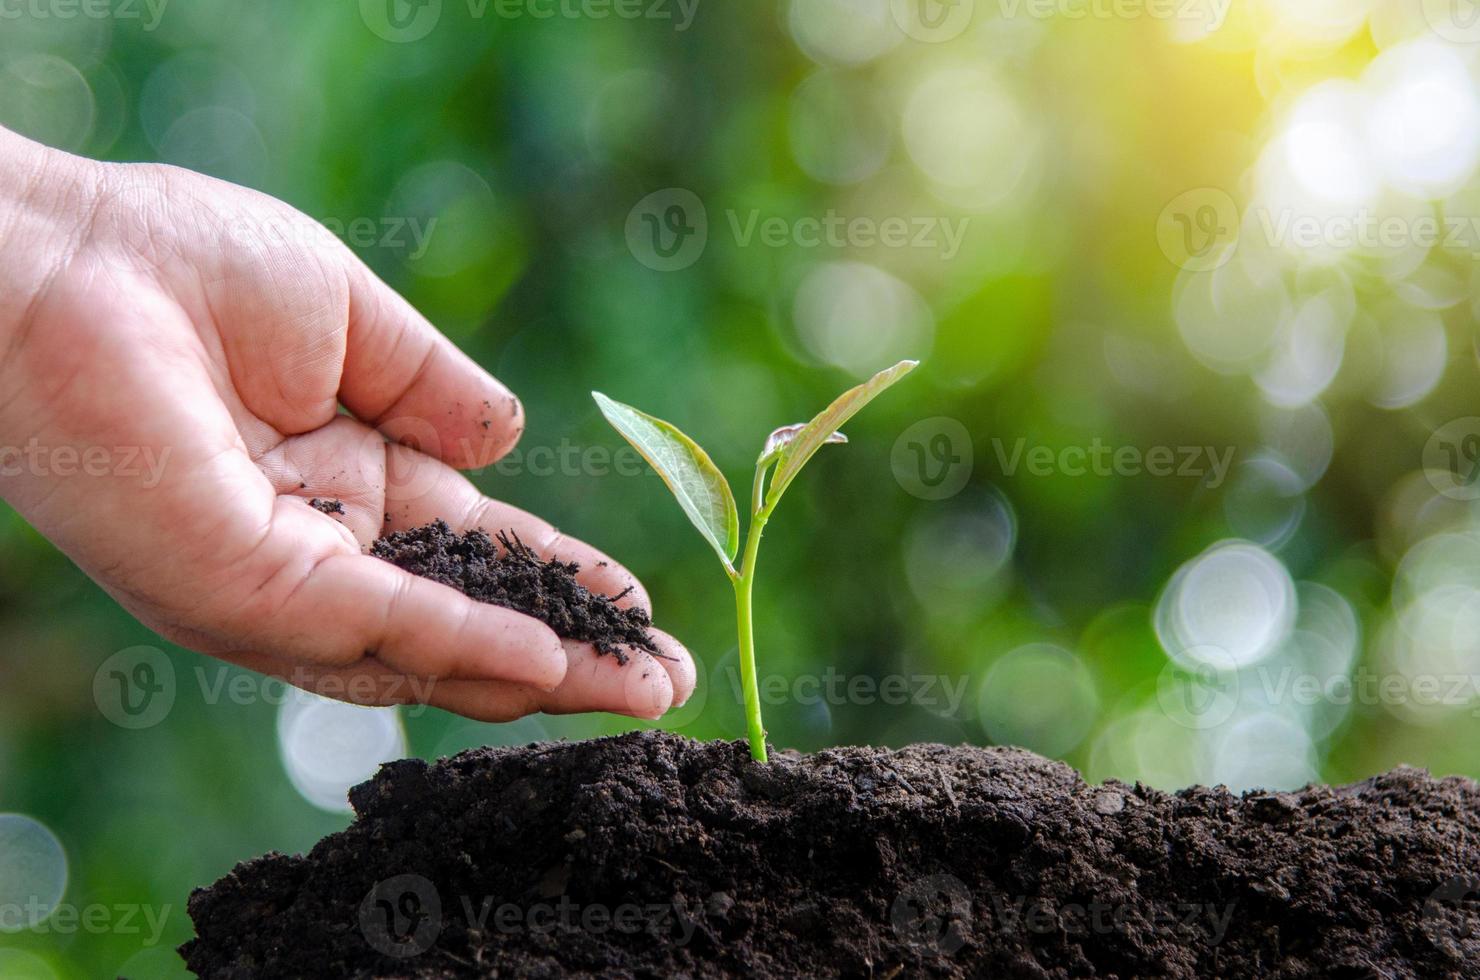 Árbol joven plantar a mano brotar en el suelo con la puesta de sol cerrar mano masculina plantando árboles jóvenes sobre fondo verde foto